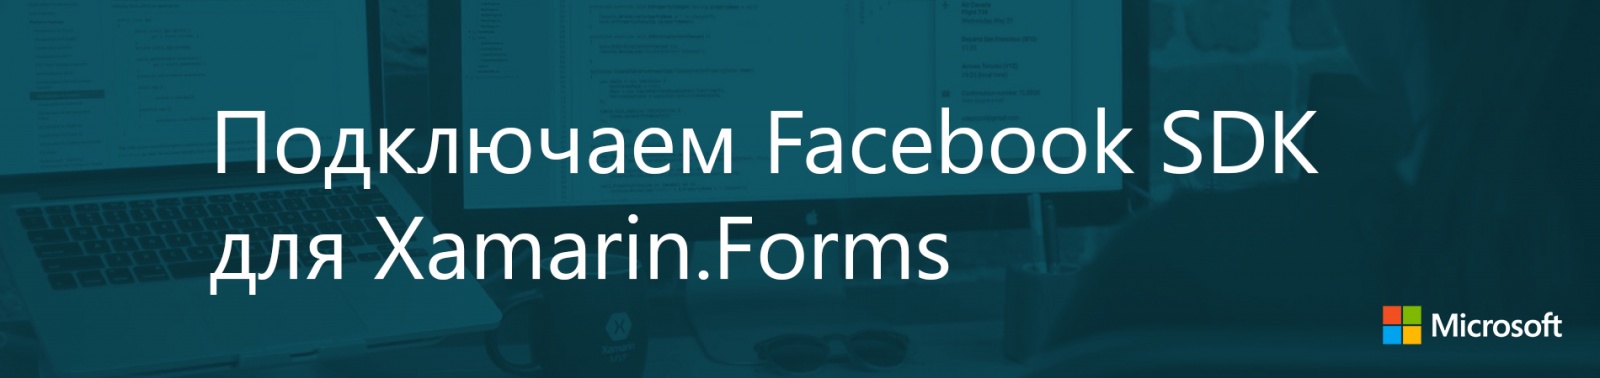 Подключаем Facebook SDK для Xamarin.Forms - 1